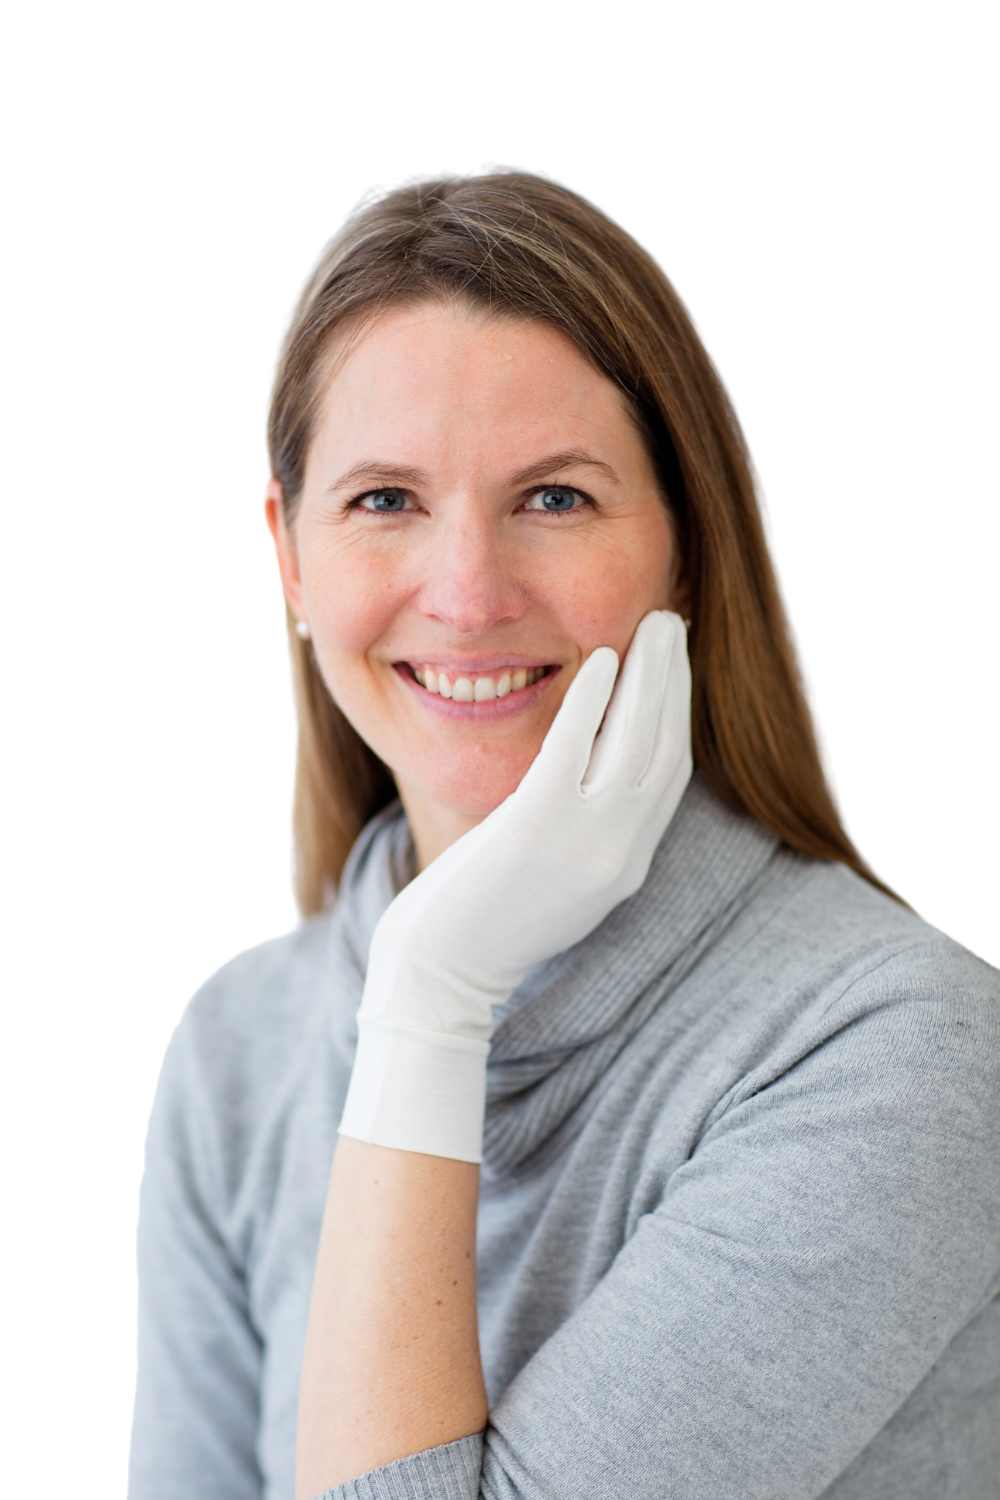 Remedywear Gloves - gloves for sensitive skin